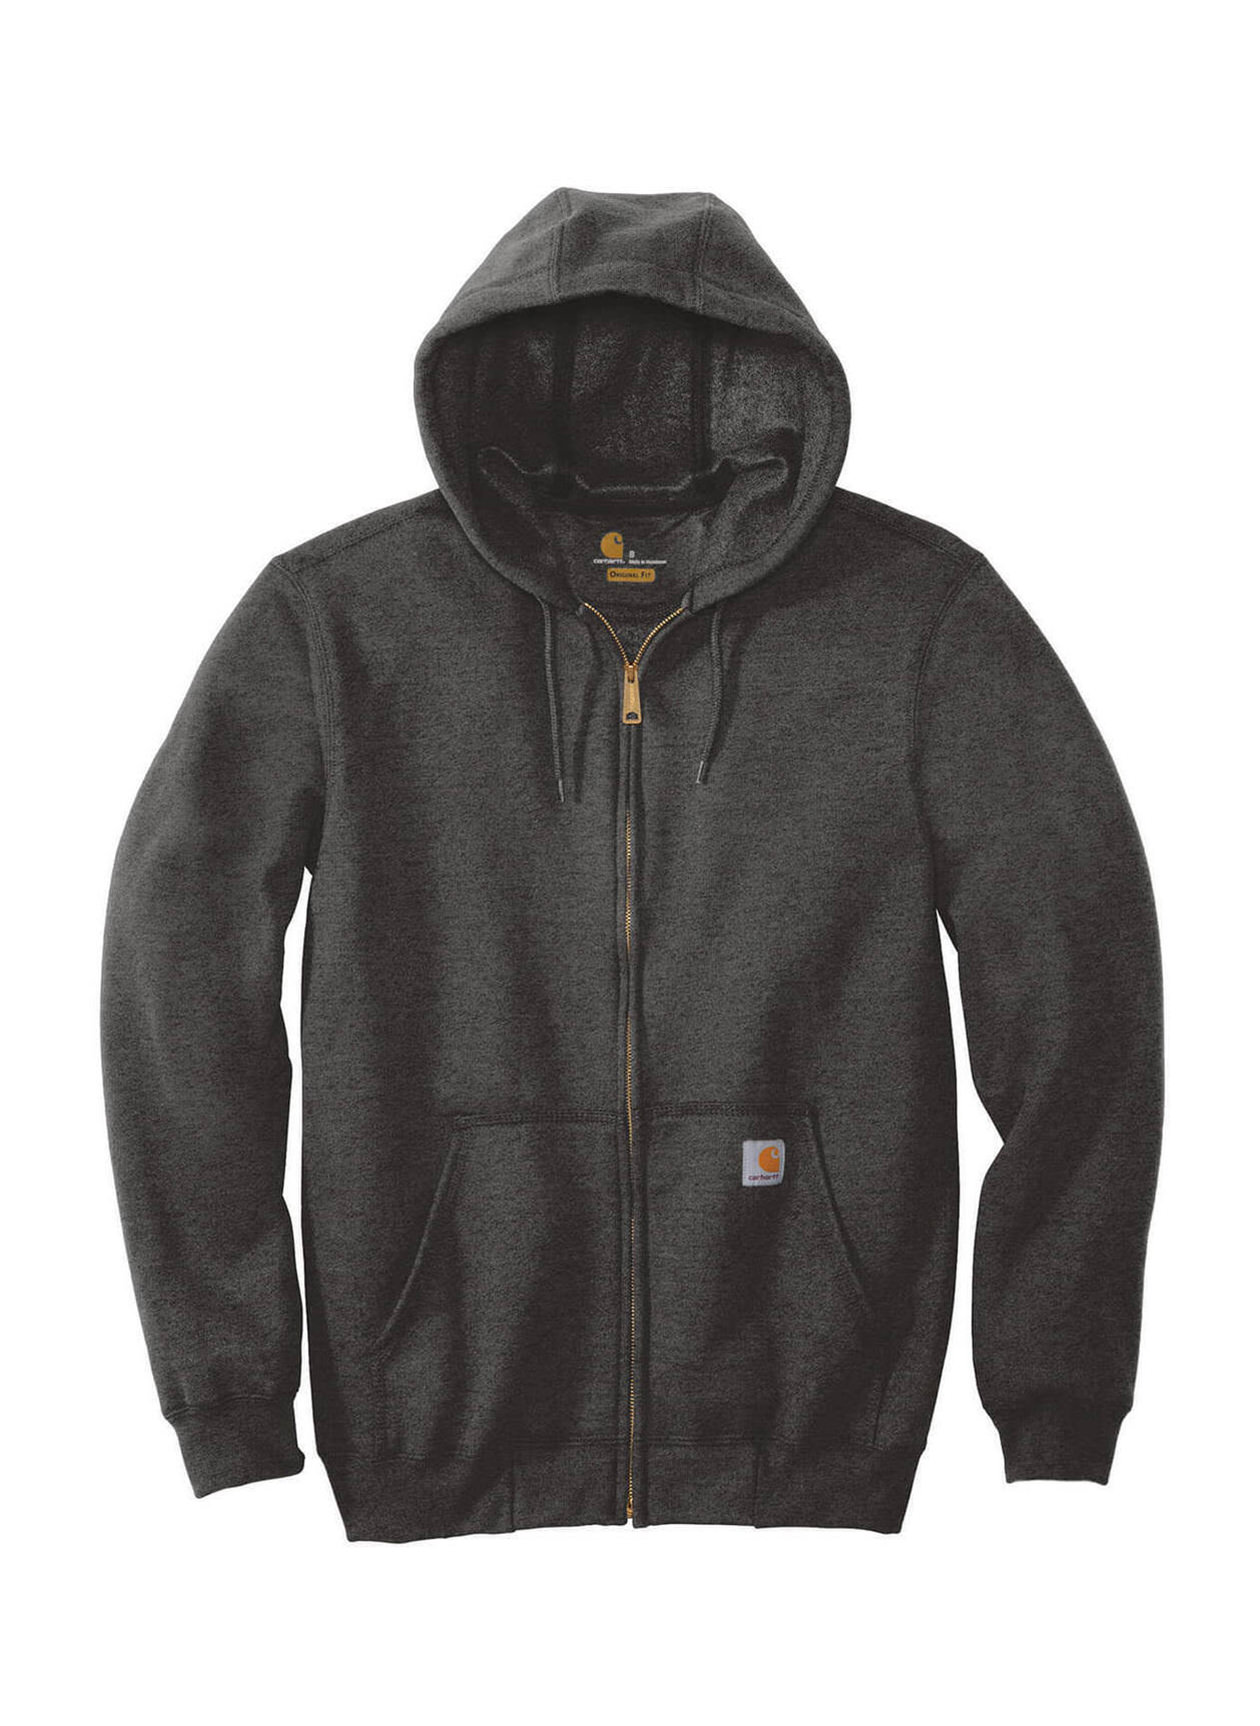 Carhartt Men's Midweight Hooded Zip Front Sweatshirt, XL, Black